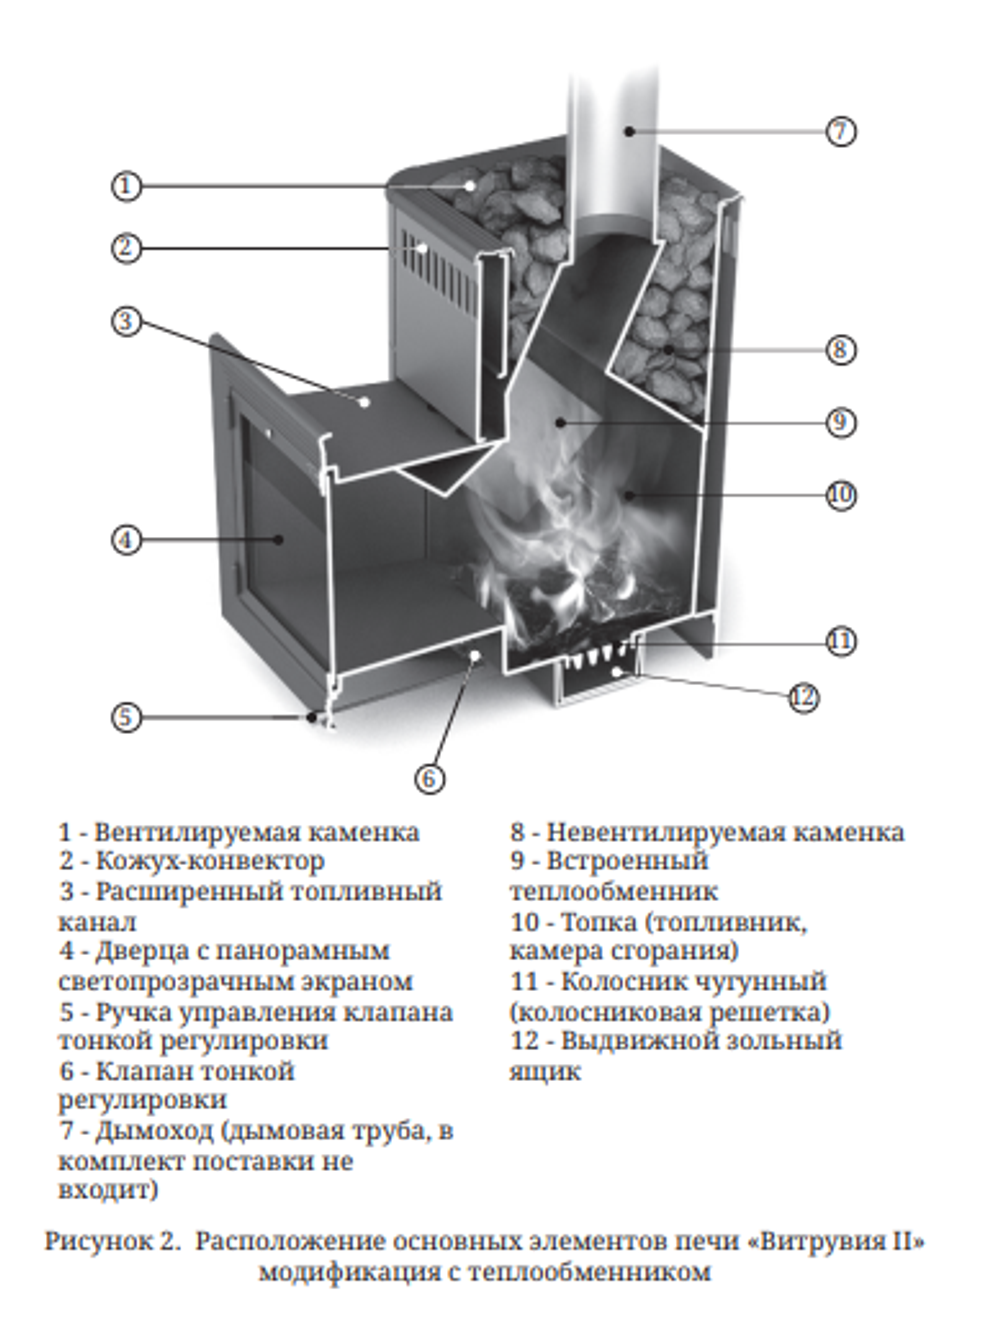 Банная печь Витрувия II Inox БСЭ ТО терракота схема с теплообменником